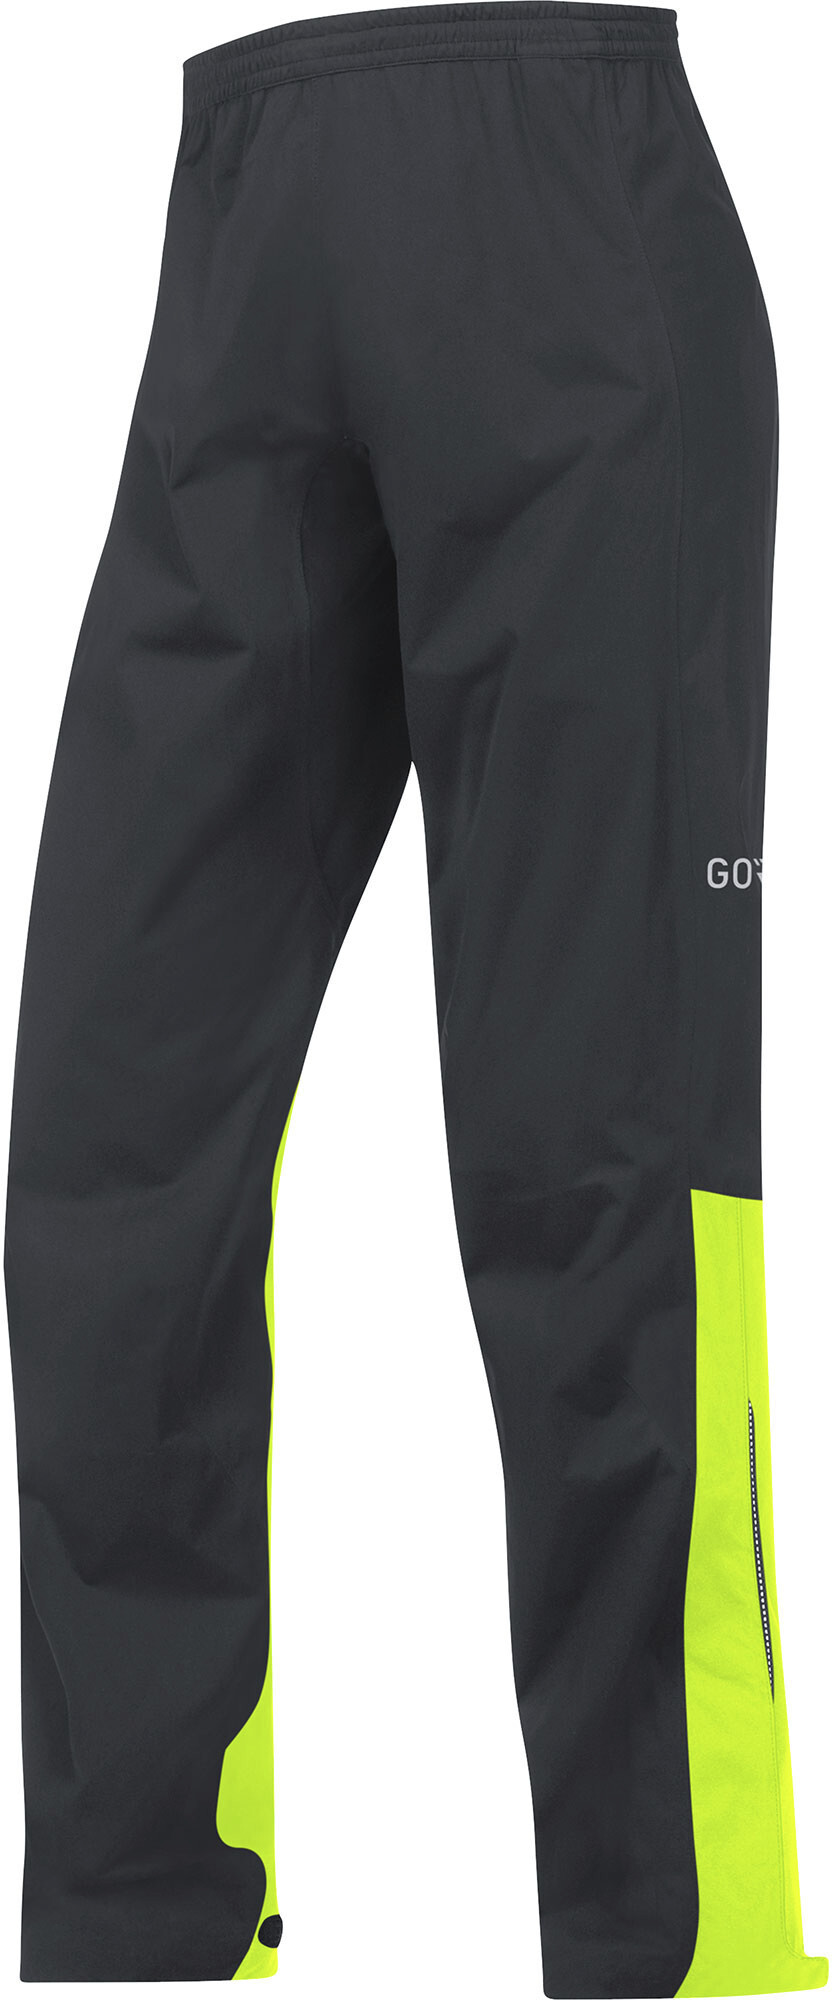 L Nero GORE Wear C3 Pantaloni impermeabili da uomo GORE-TEX